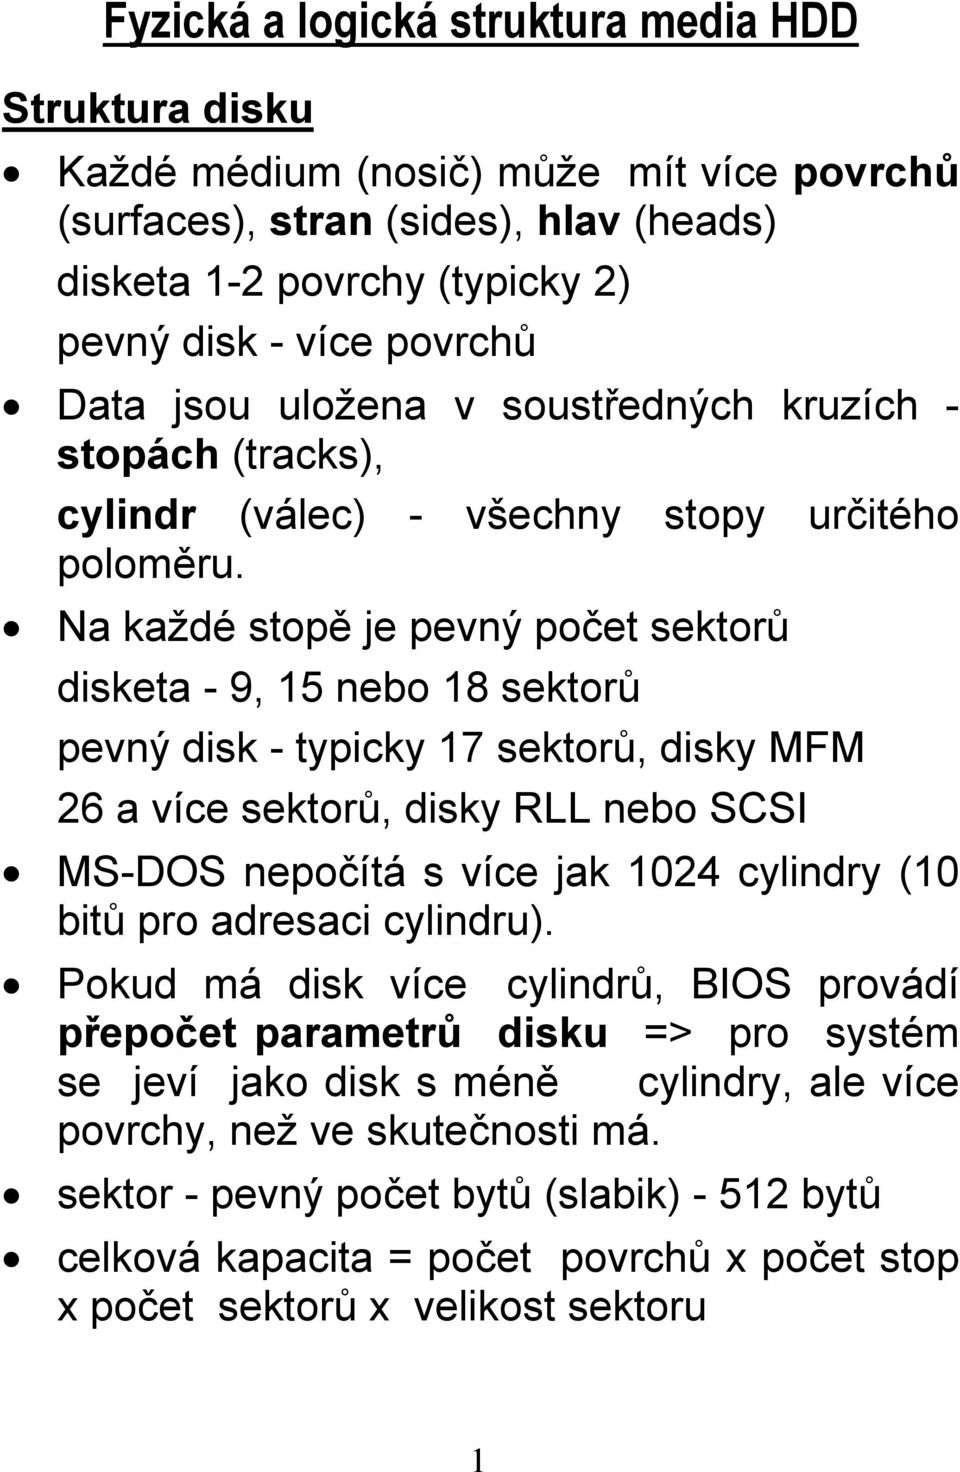 Na každé stopě je pevný počet sektorů disketa - 9, 15 nebo 18 sektorů pevný disk - typicky 17 sektorů, disky MFM 26 a více sektorů, disky RLL nebo SCSI MS-DOS nepočítá s více jak 1024 cylindry (10